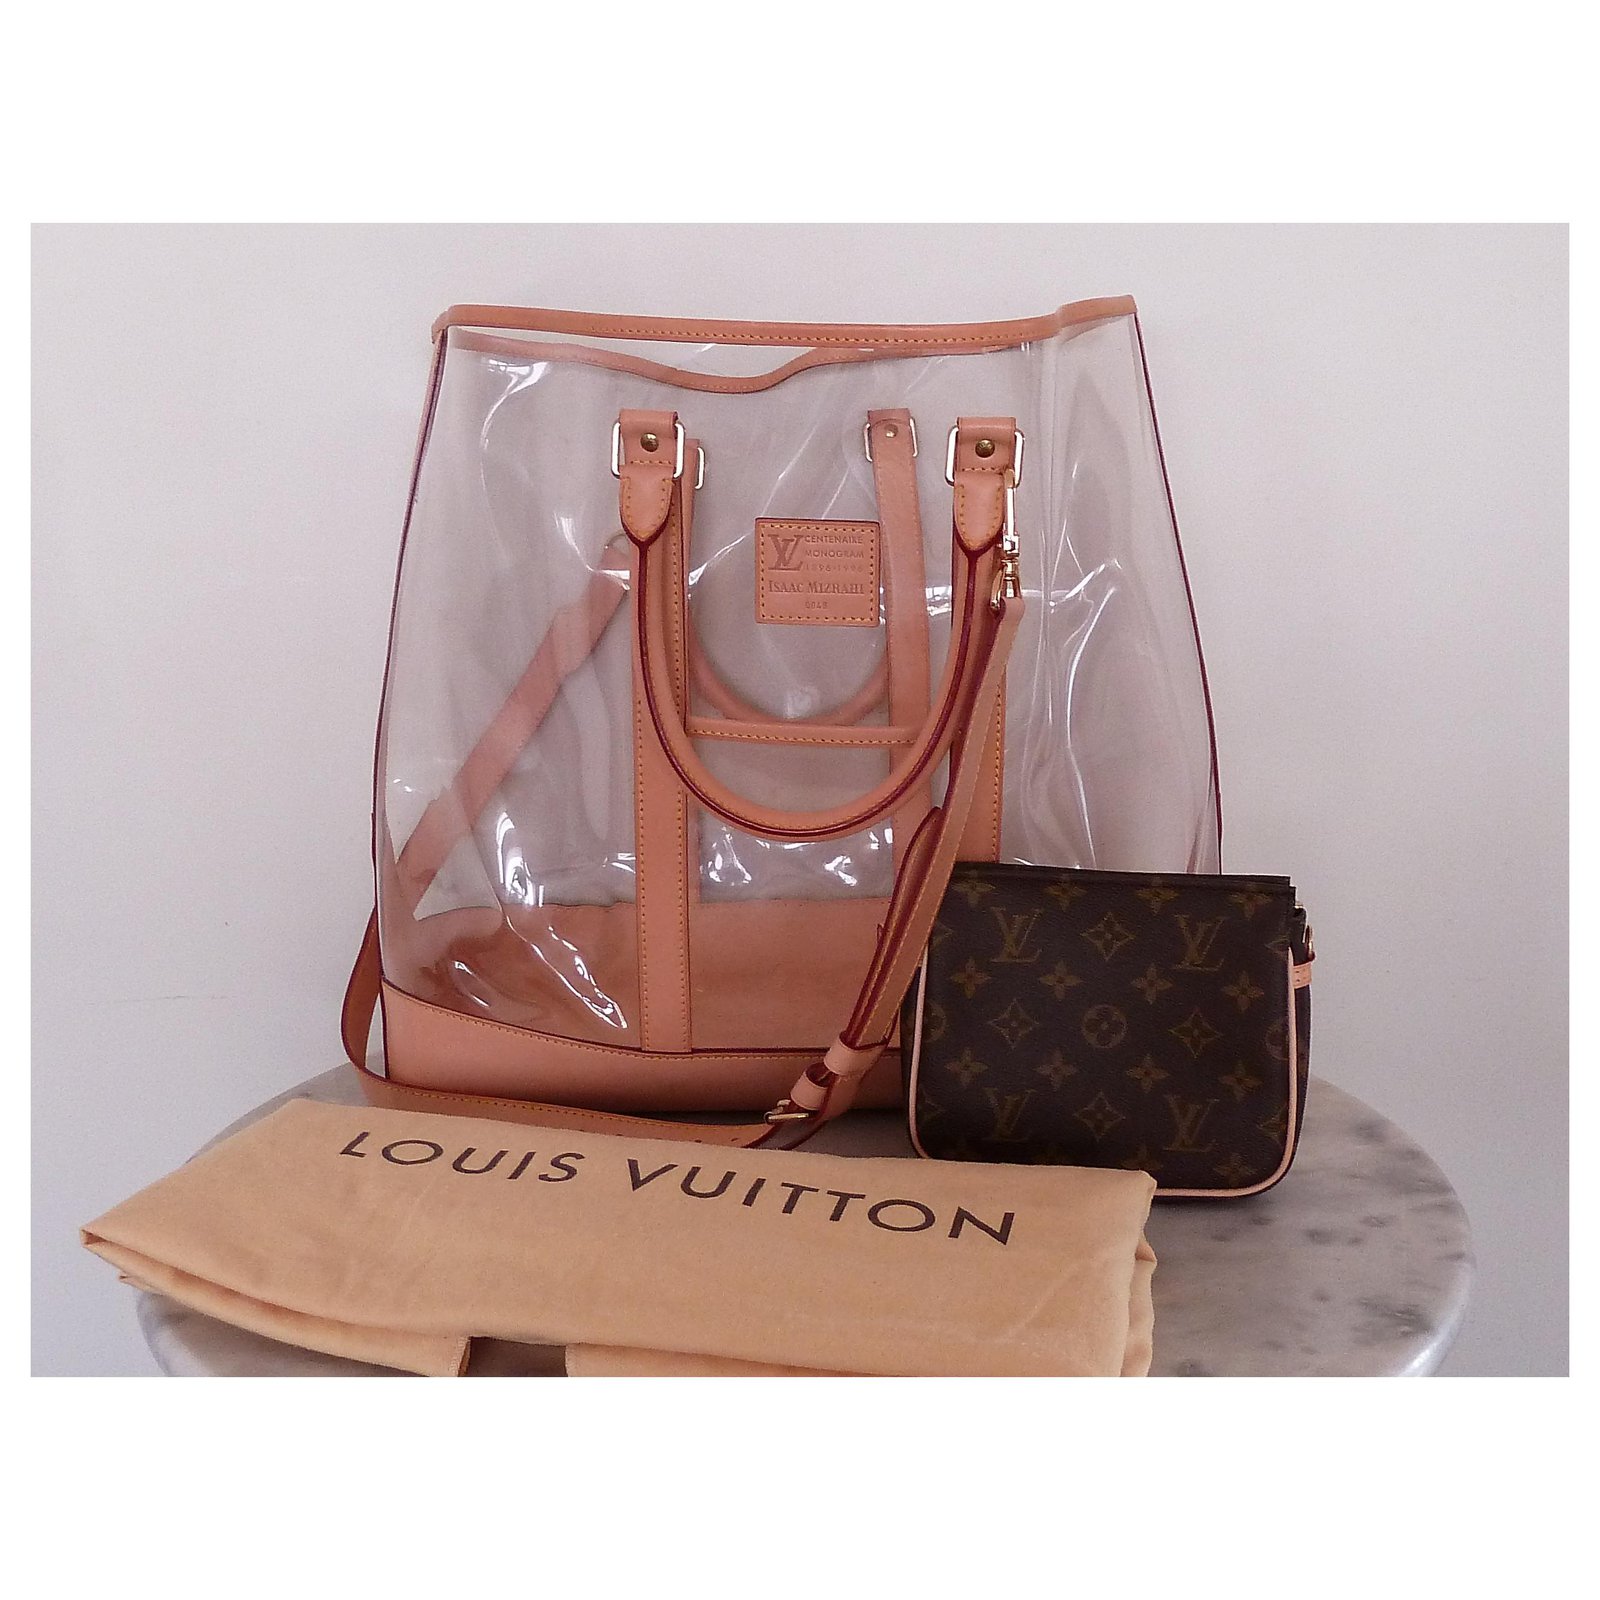 Louis Vuitton Isaac Mizrahi Centenaire Sac Weekend w/ Pouch - Clear Totes,  Handbags - LOU723579